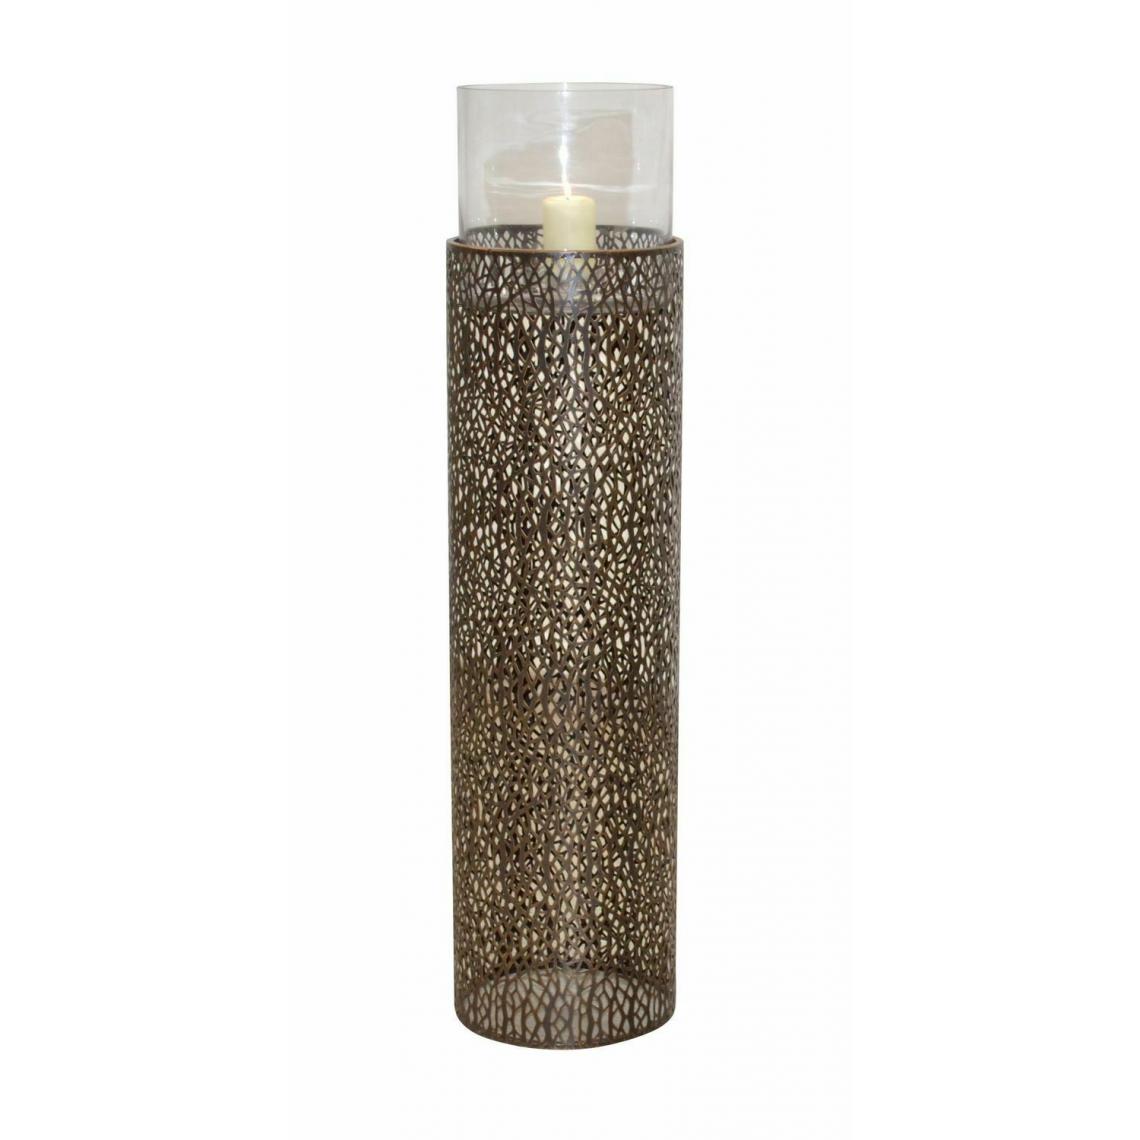 Decoshop26 - Lanterne de sol bougeoir design romantique en métal avec une surface perforée couleur marron hauteur 89 cm DEC05106 - Bougeoirs, chandeliers